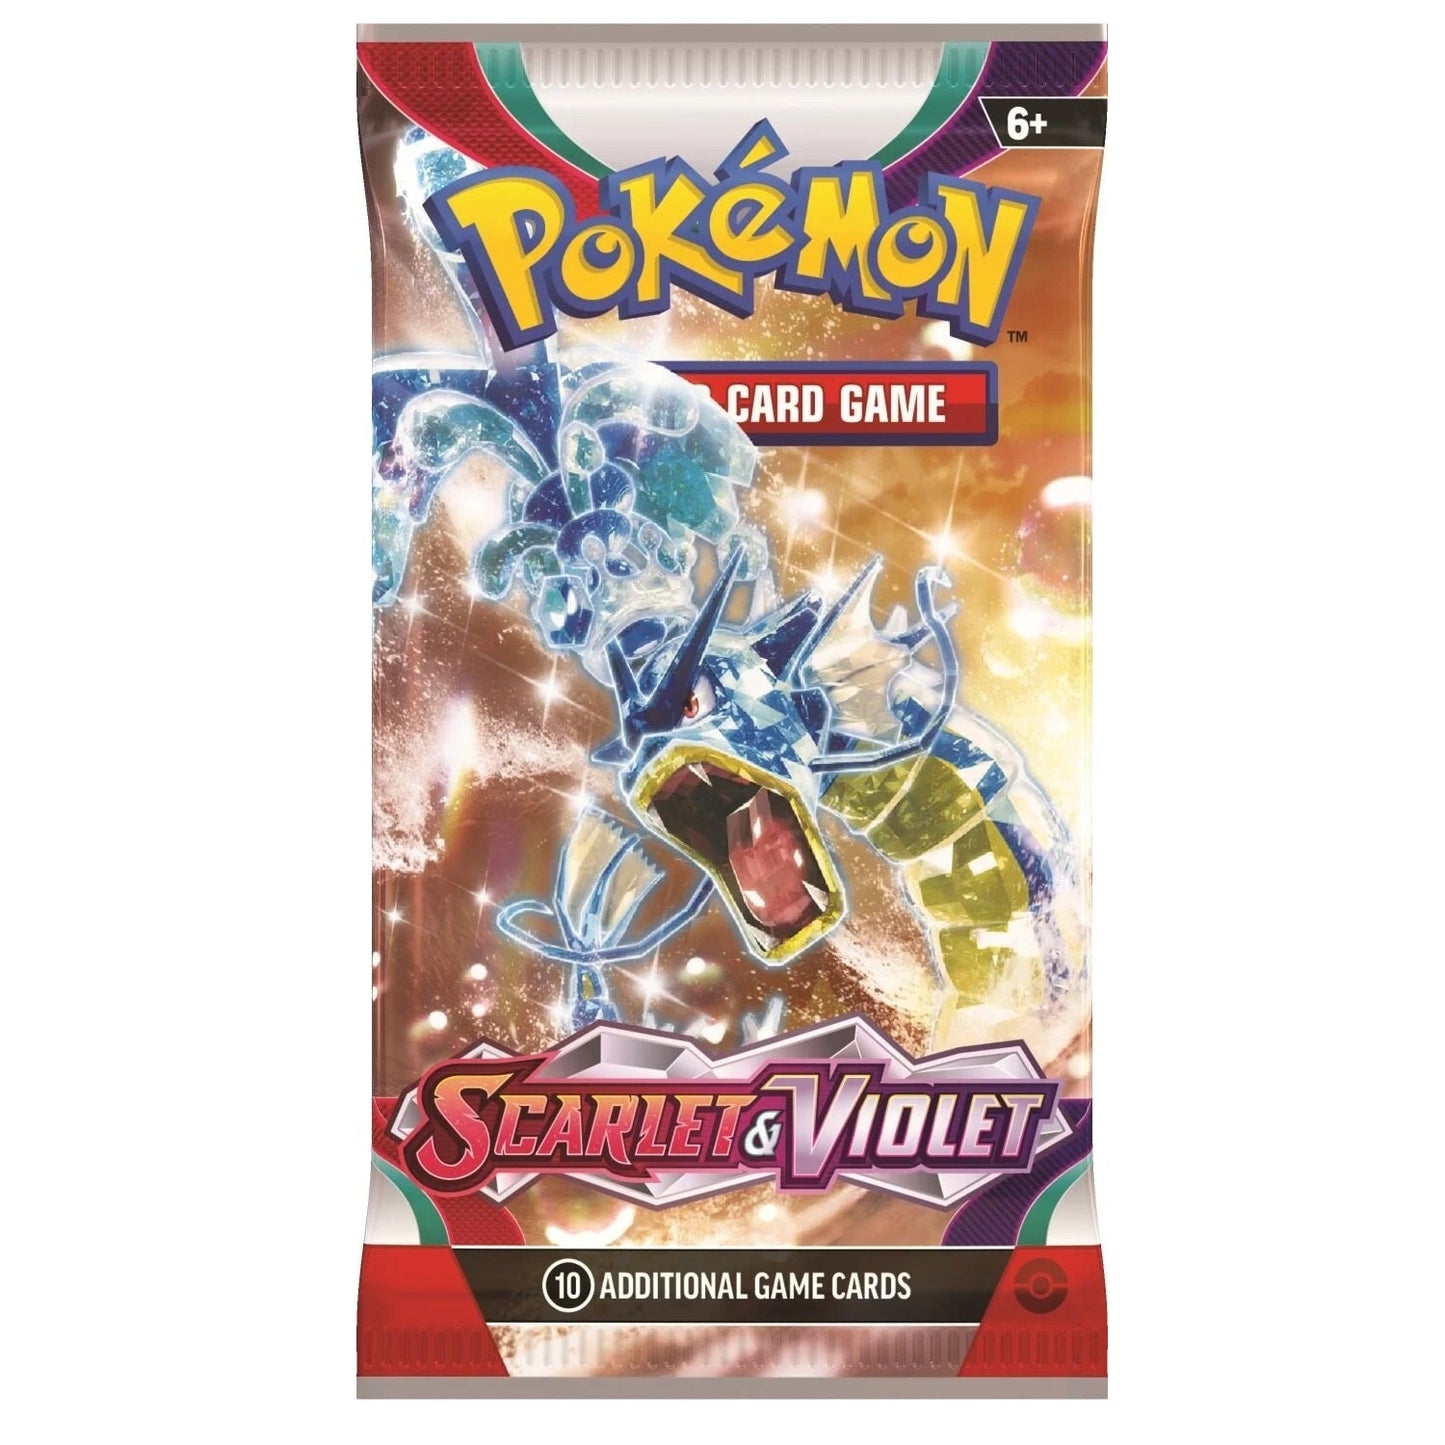 Pokémon TCG - Scarlet & Violet Booster Box Case